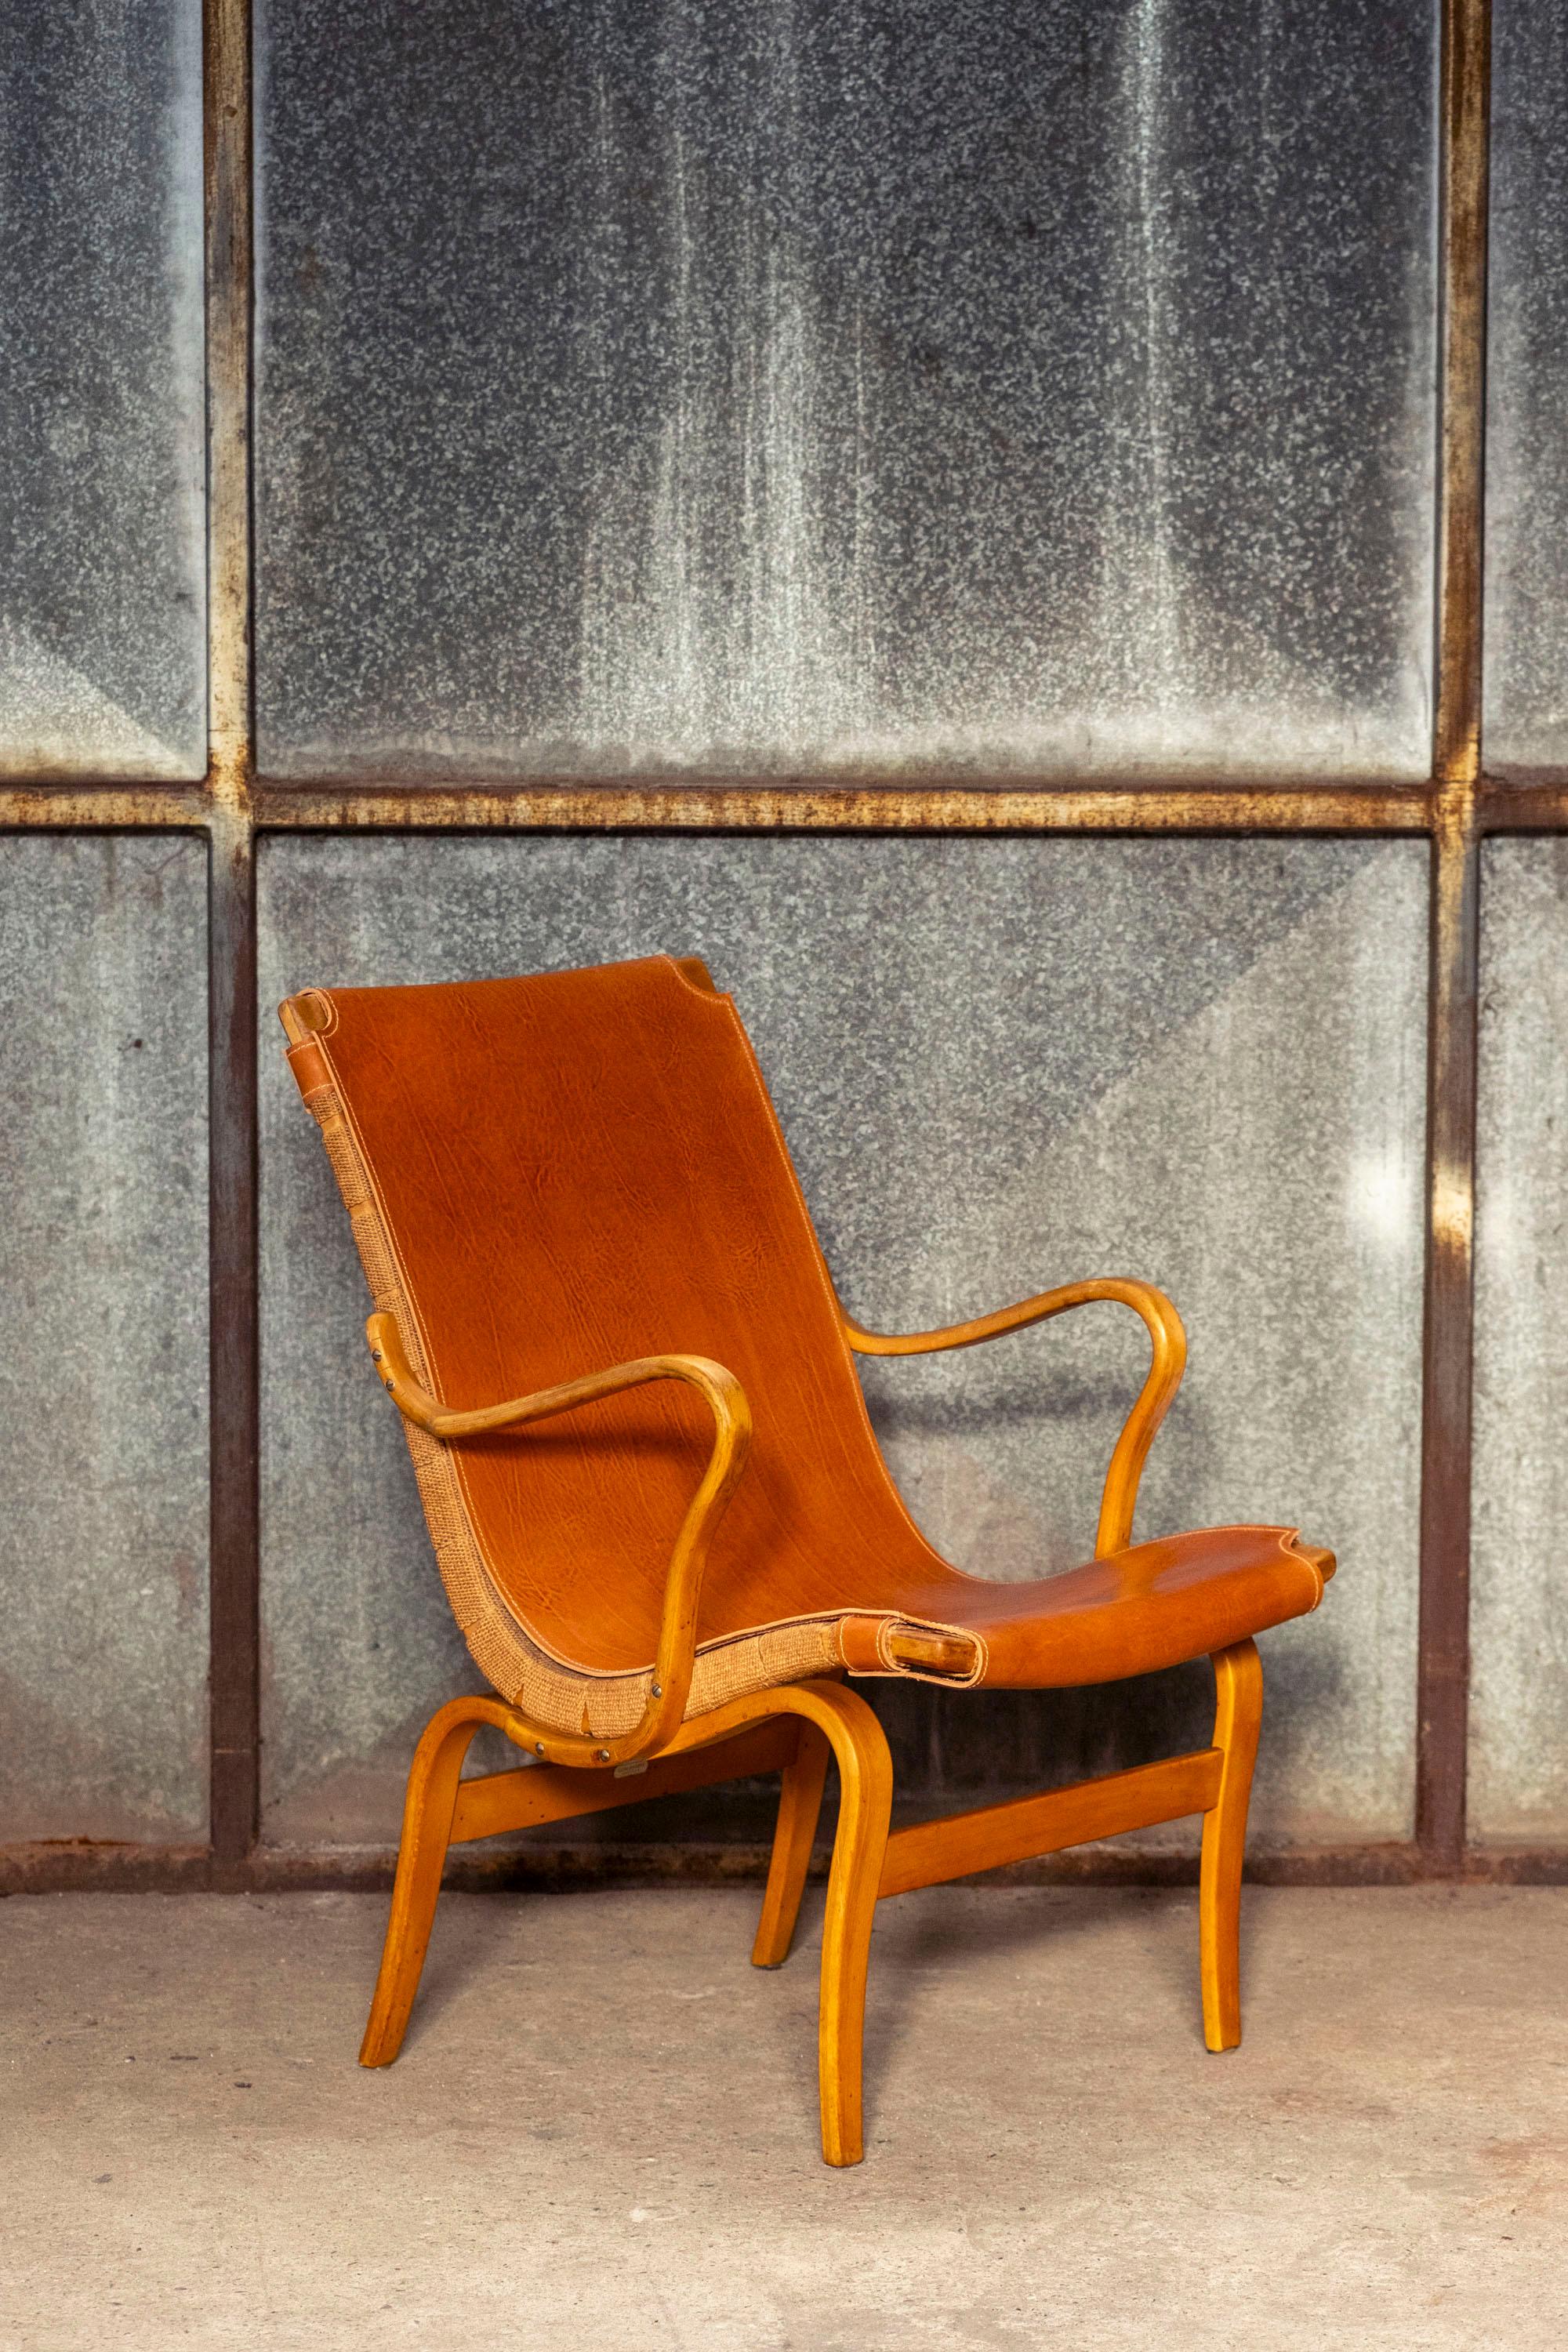 Première génération de la chaise longue Eva de Bruno Mathsson avec un manchon recouvert de cuir pleine fleur entièrement piqué à la main.
Produit dans les années 1960 par Karl Mathsson en Suède.
Fauteuil fonctionnel, élégant et confortable.
Marque